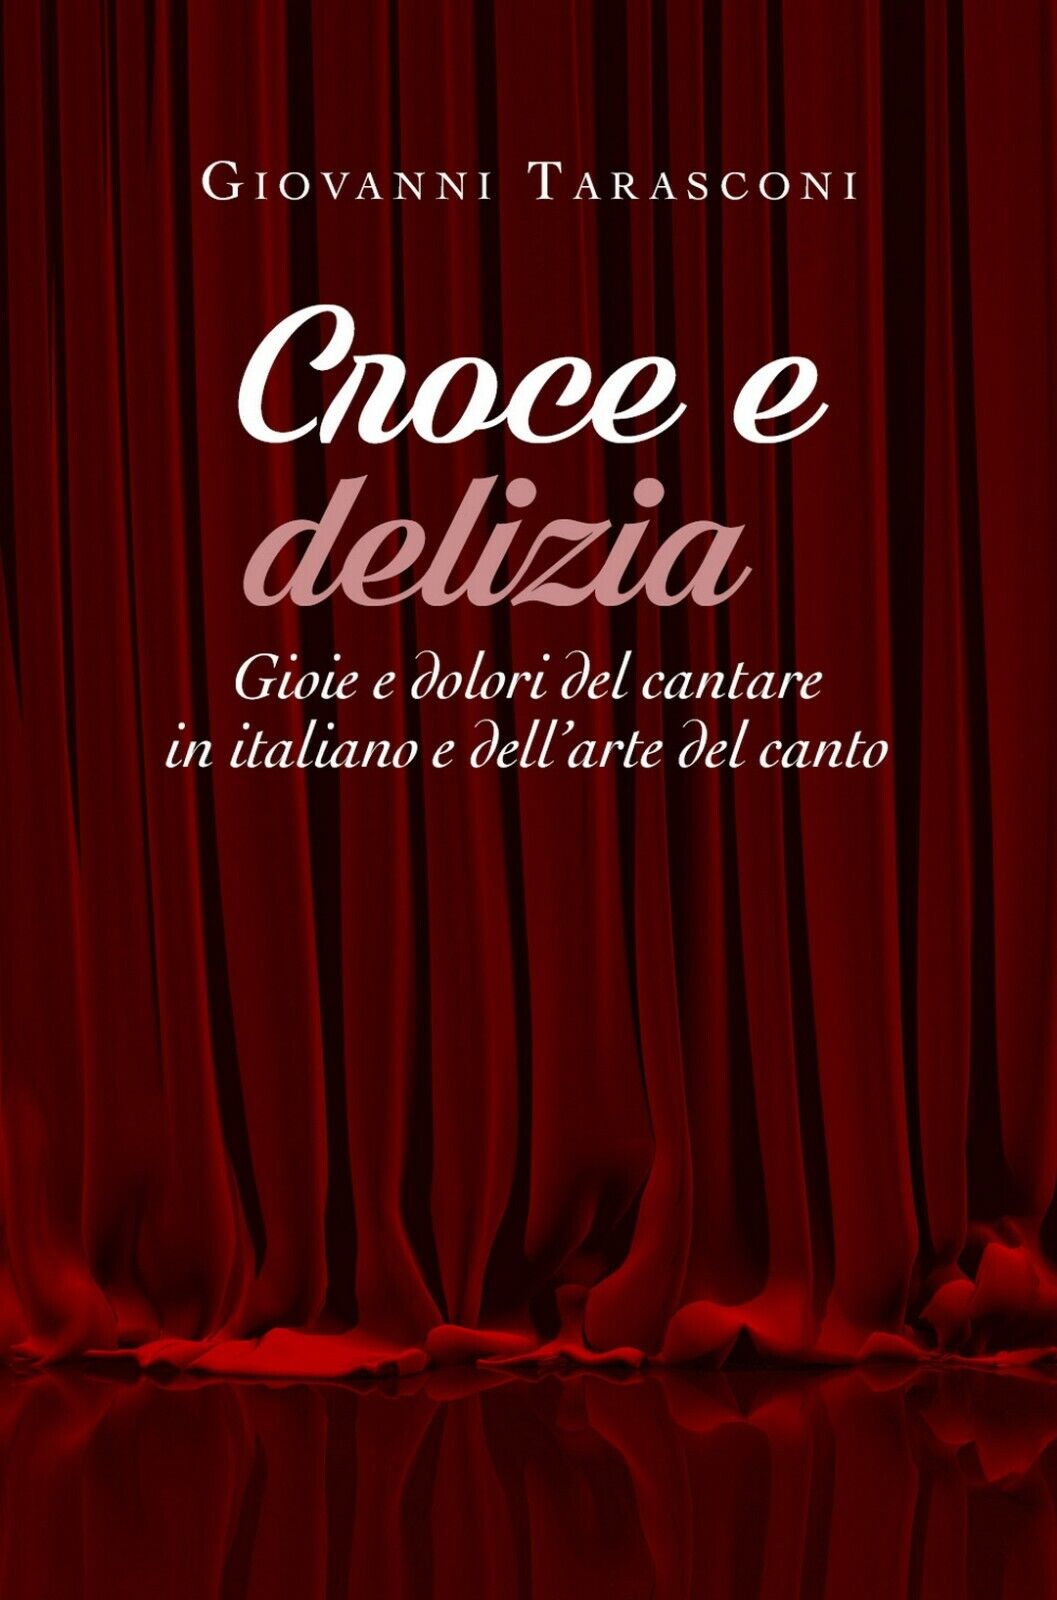 Croce e delizia - Gioie e dolori del cantare in italiano e delL'arte del canto   libro usato